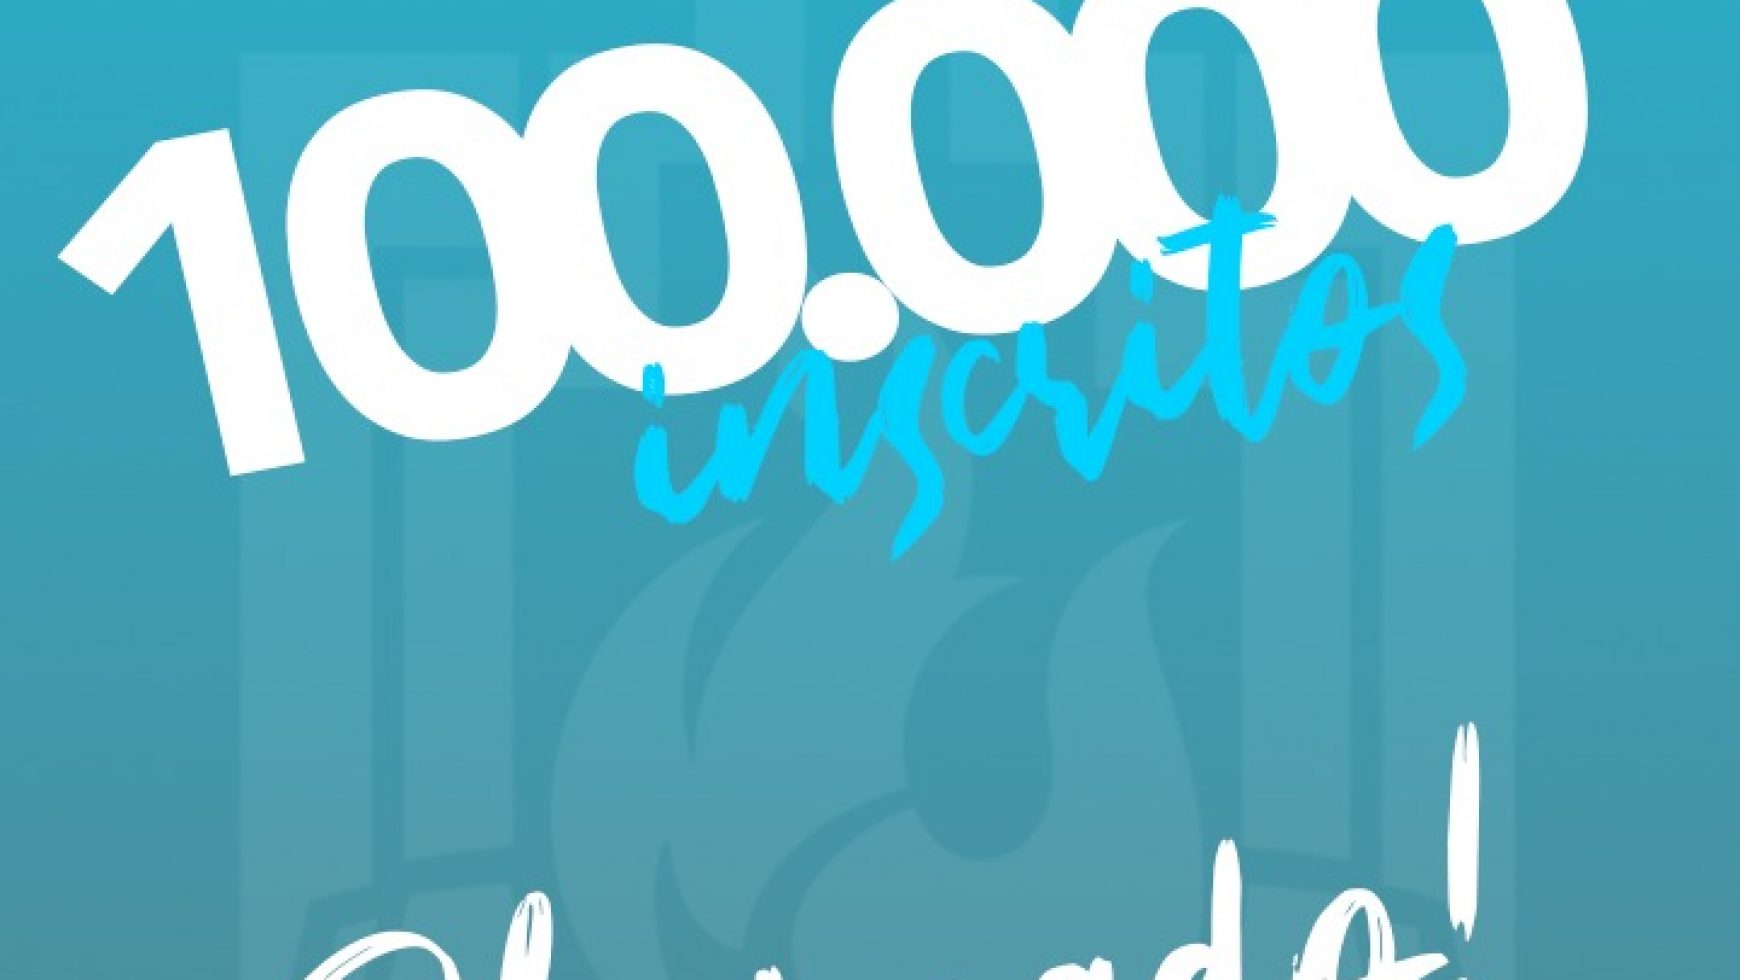 Haja bênção: ADSA Brasil chega à marca de 100k no Youtube